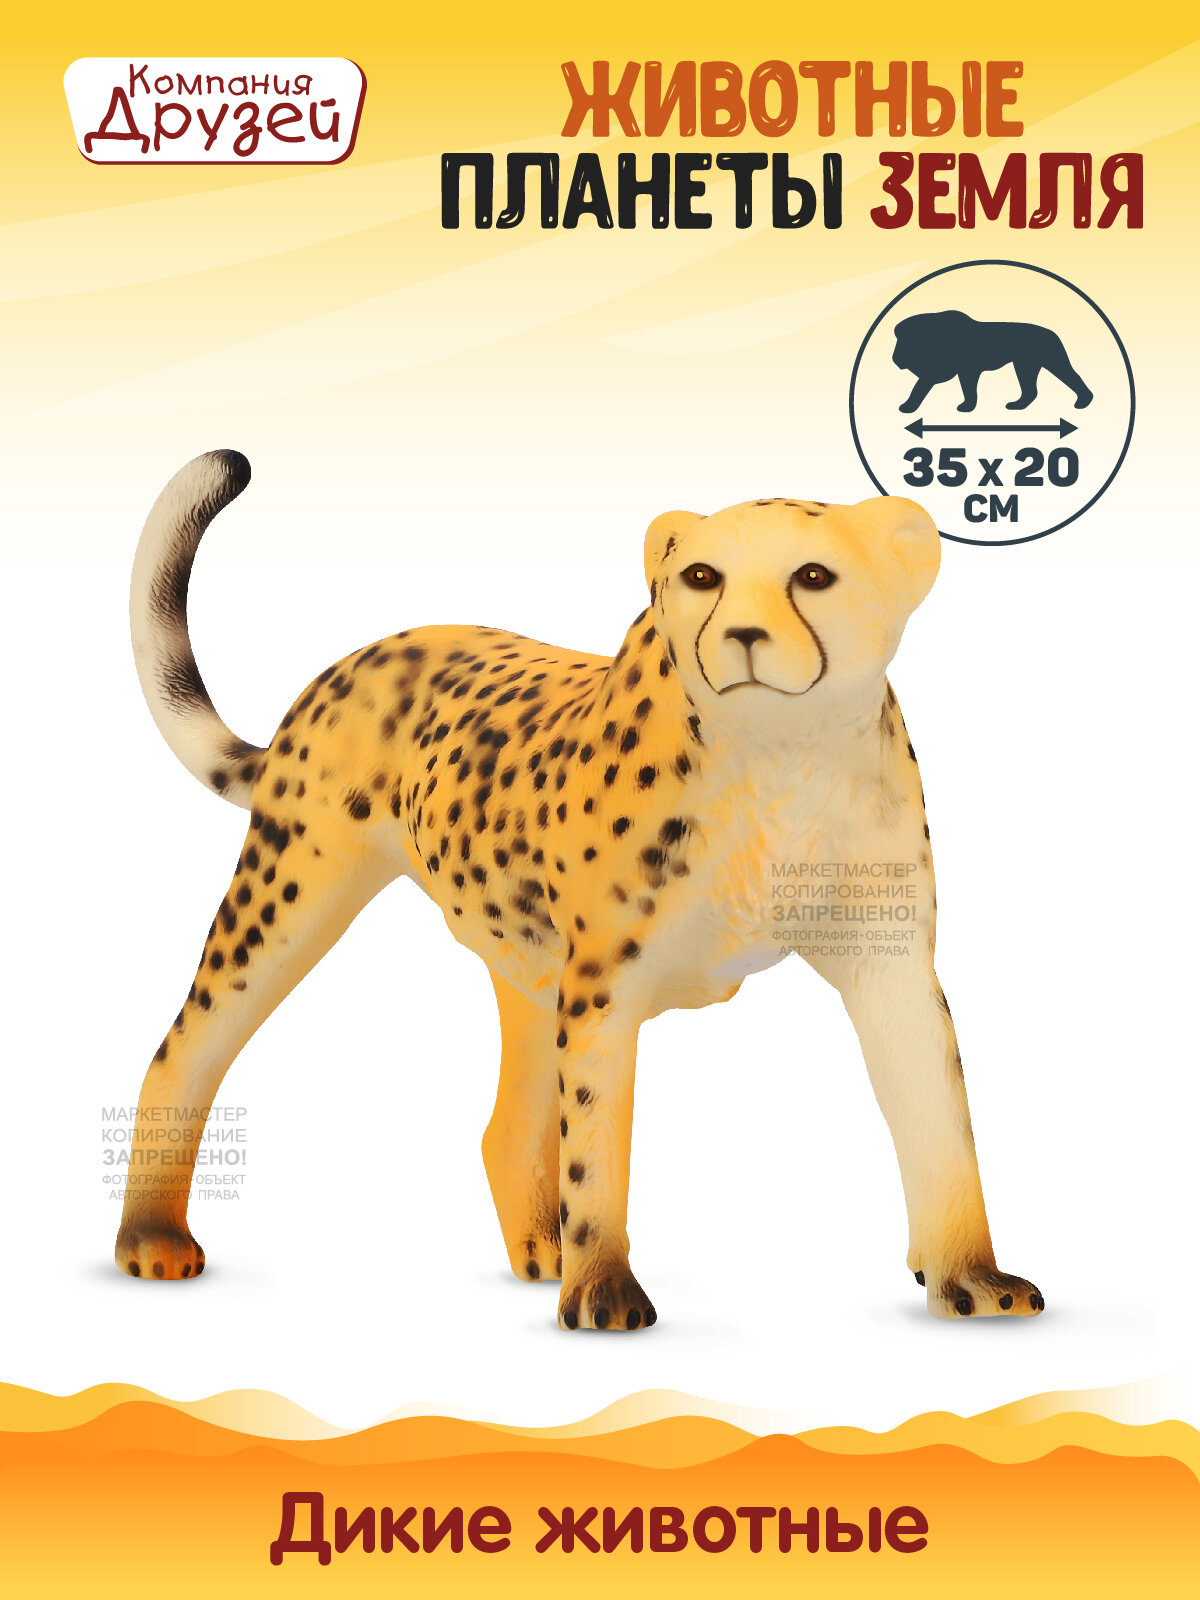 Игрушка для детей Леопард ТМ компания друзей, серия "Животные планеты Земля", игрушечное животное, эластичный пластик, JB0208341